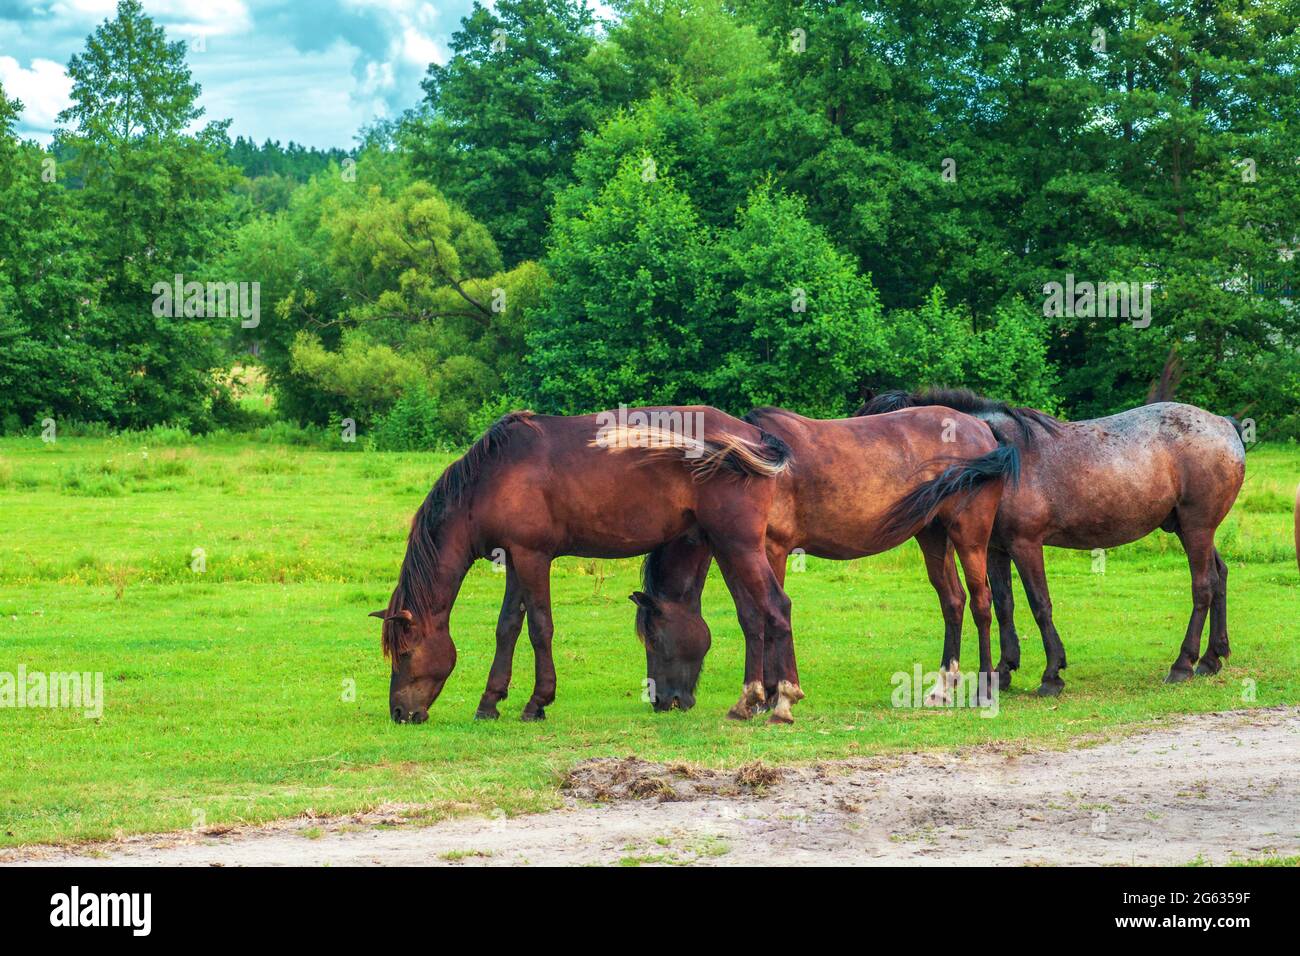 Un troupeau de chevaux bruns sauvages bruns se broutent sur les champs verts d'été par le ciel bleu. Paysage d'été avec groupe équin près de la forêt Banque D'Images